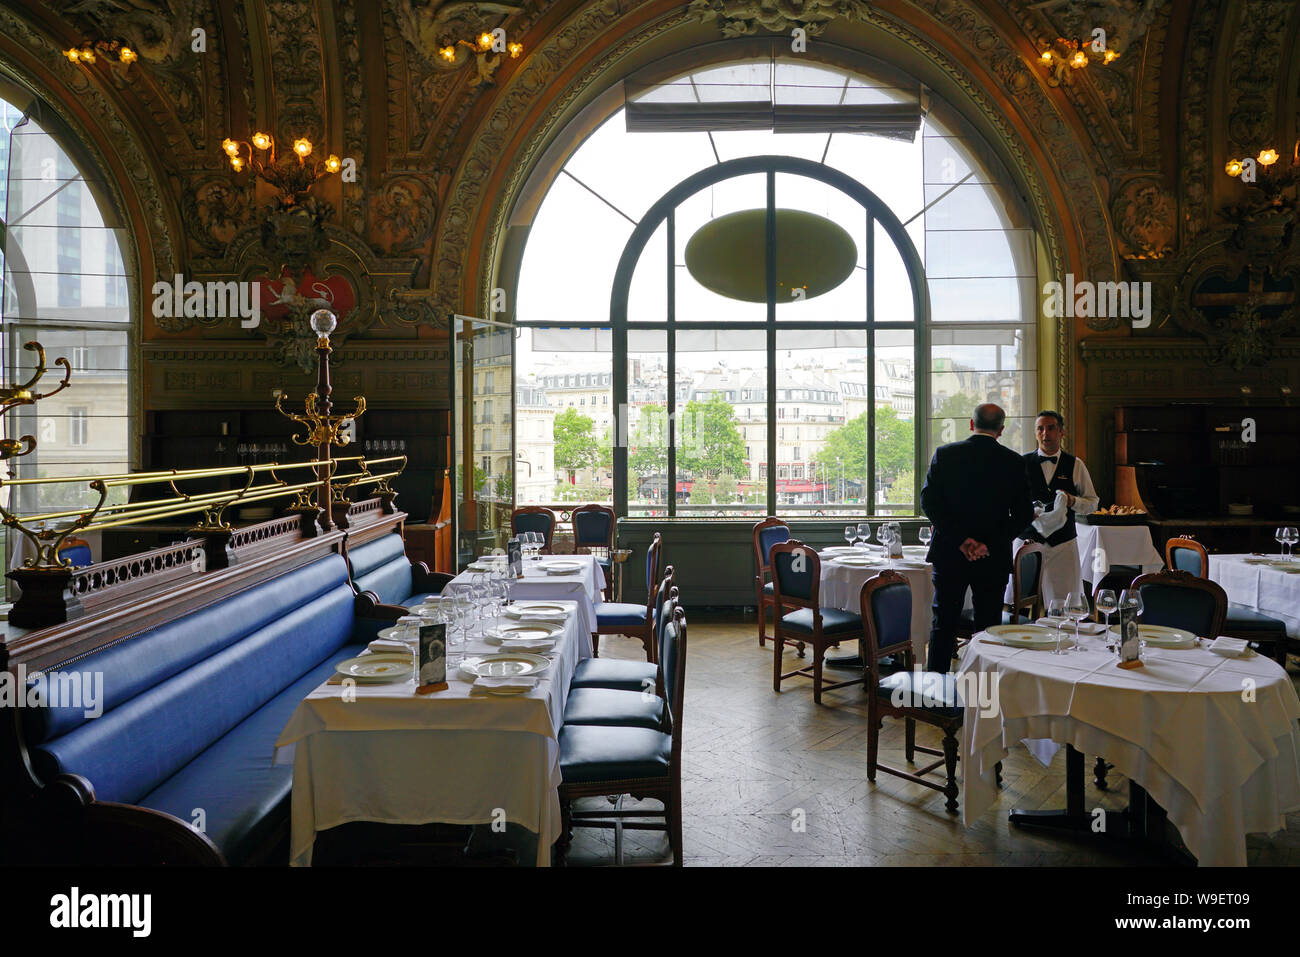 PARIS, FRANCE -20 JUL 2019- View of the landmark Belle Epoque Le Train Bleu (the blue train) restaurant inside the historic Gare de Lyon train station Stock Photo